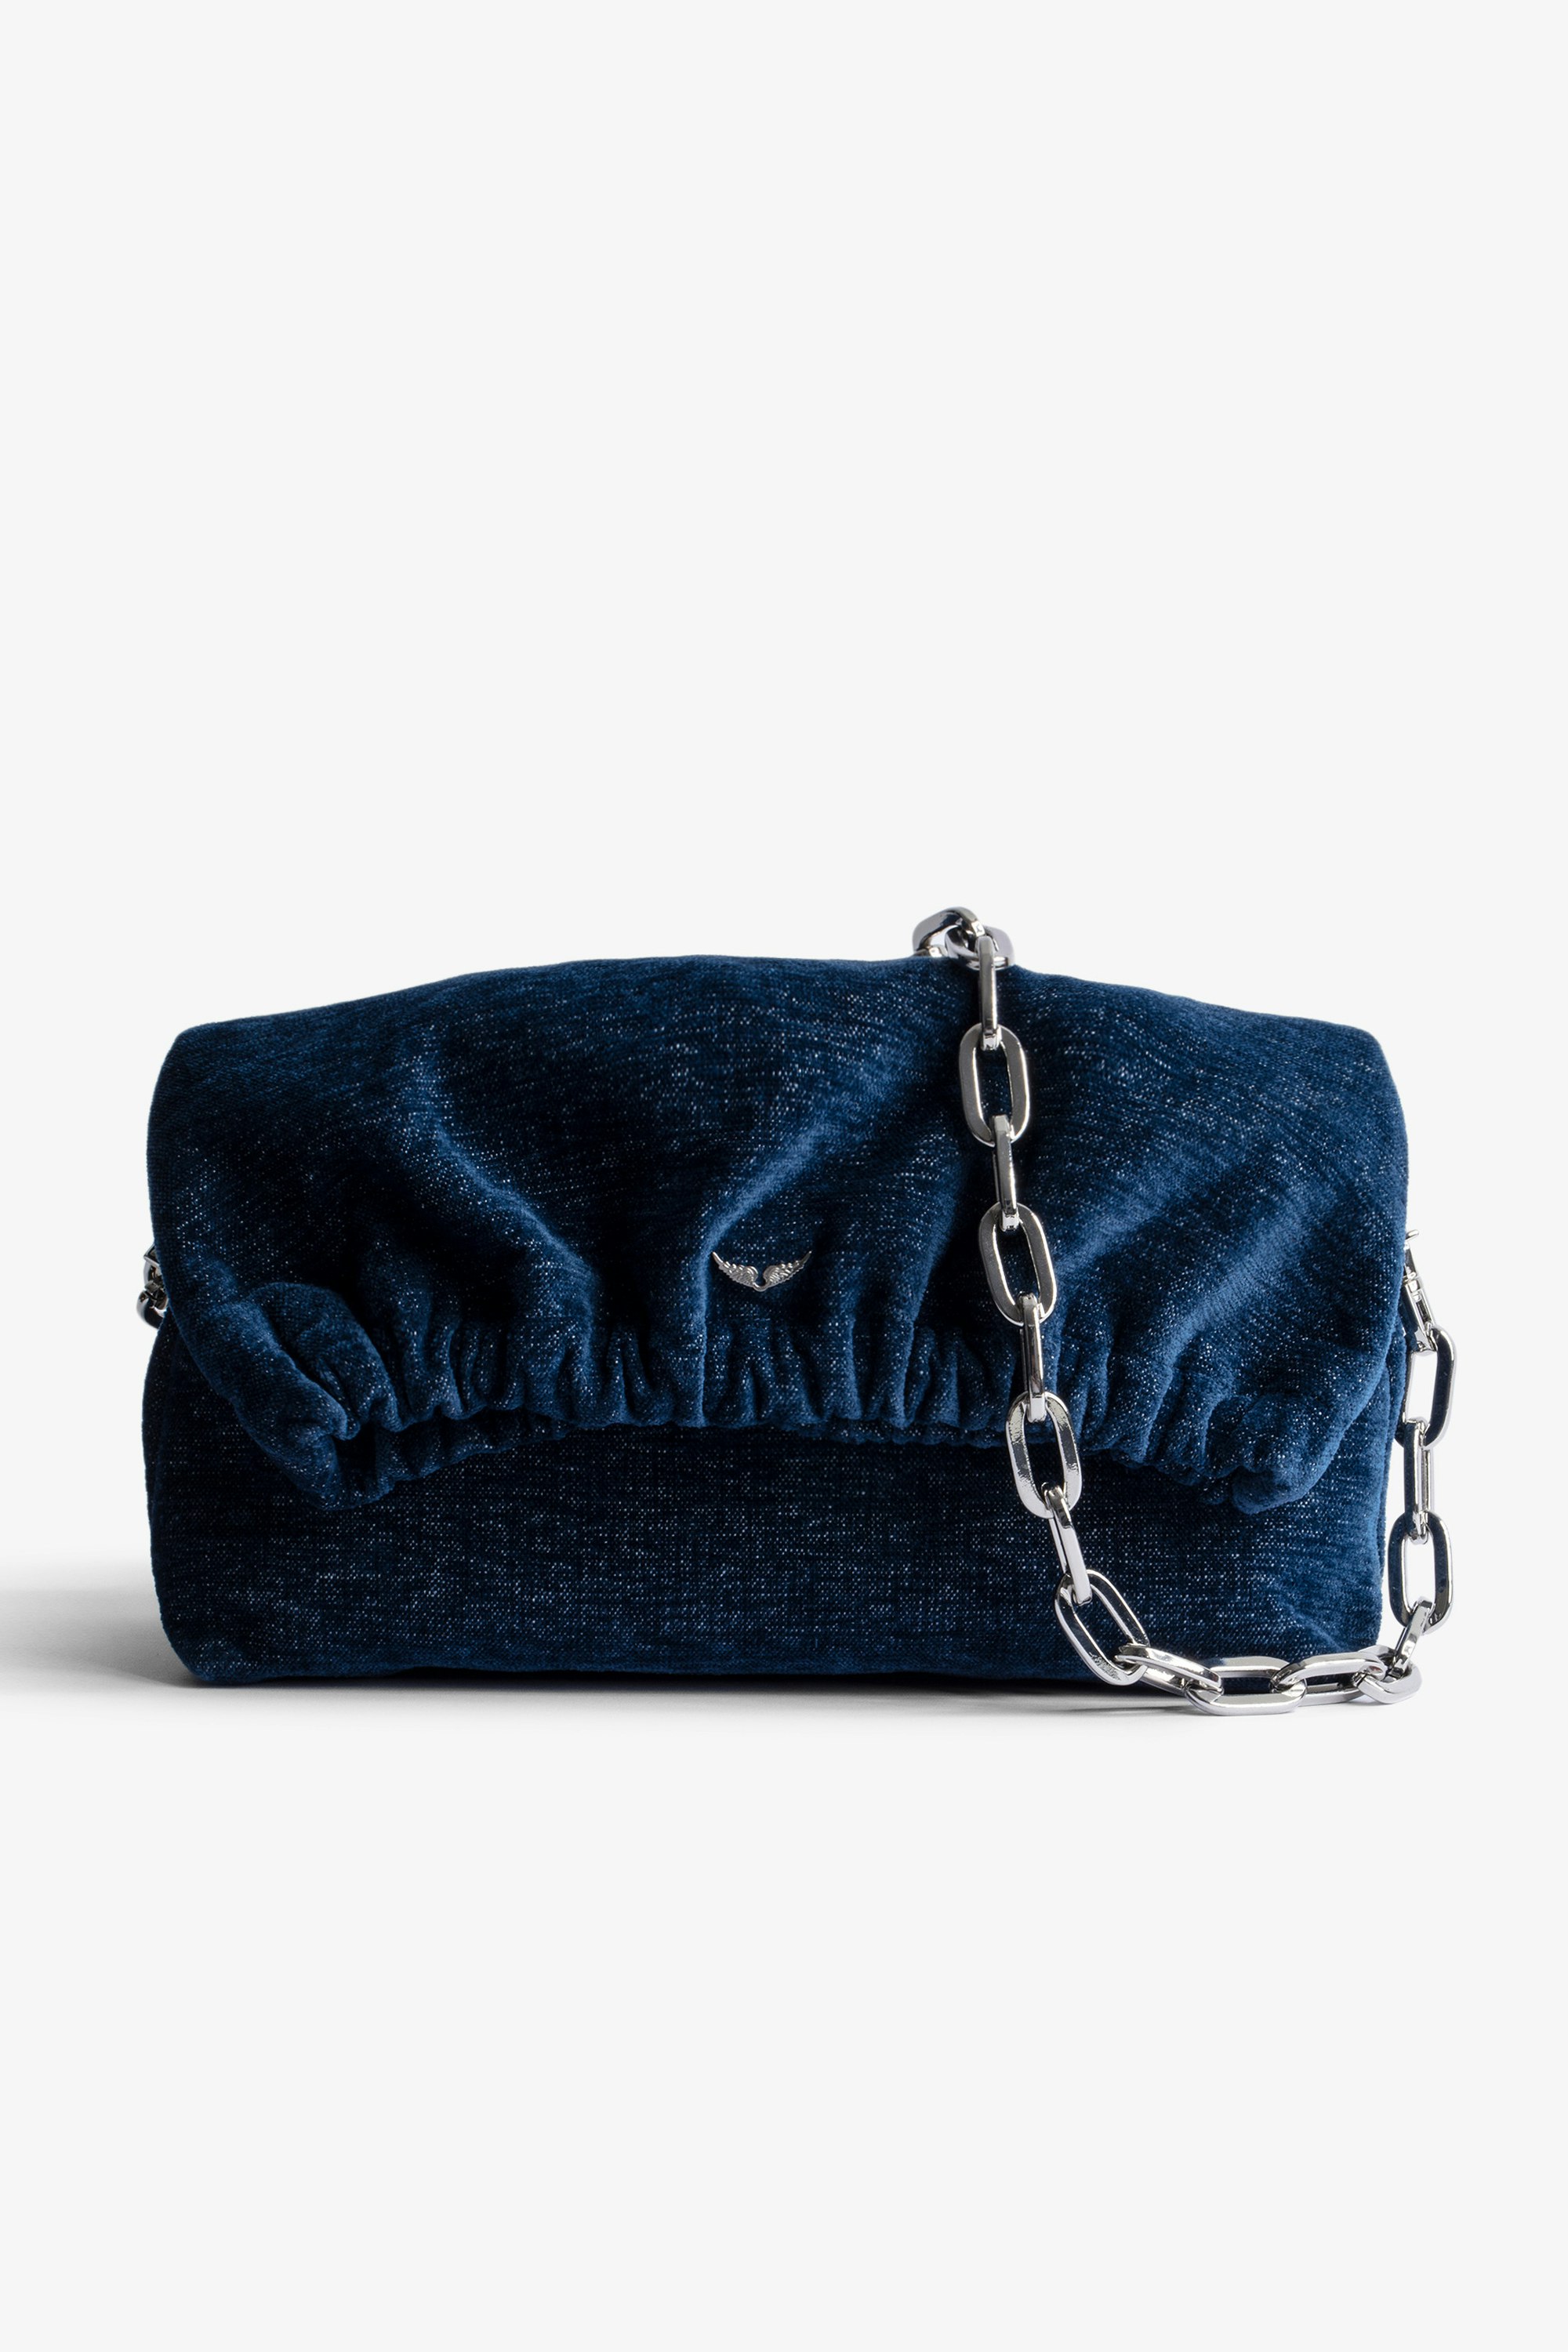 Bolso Rockyssime Bolso de mano de tejido dénim azul con cadena metálica para mujer